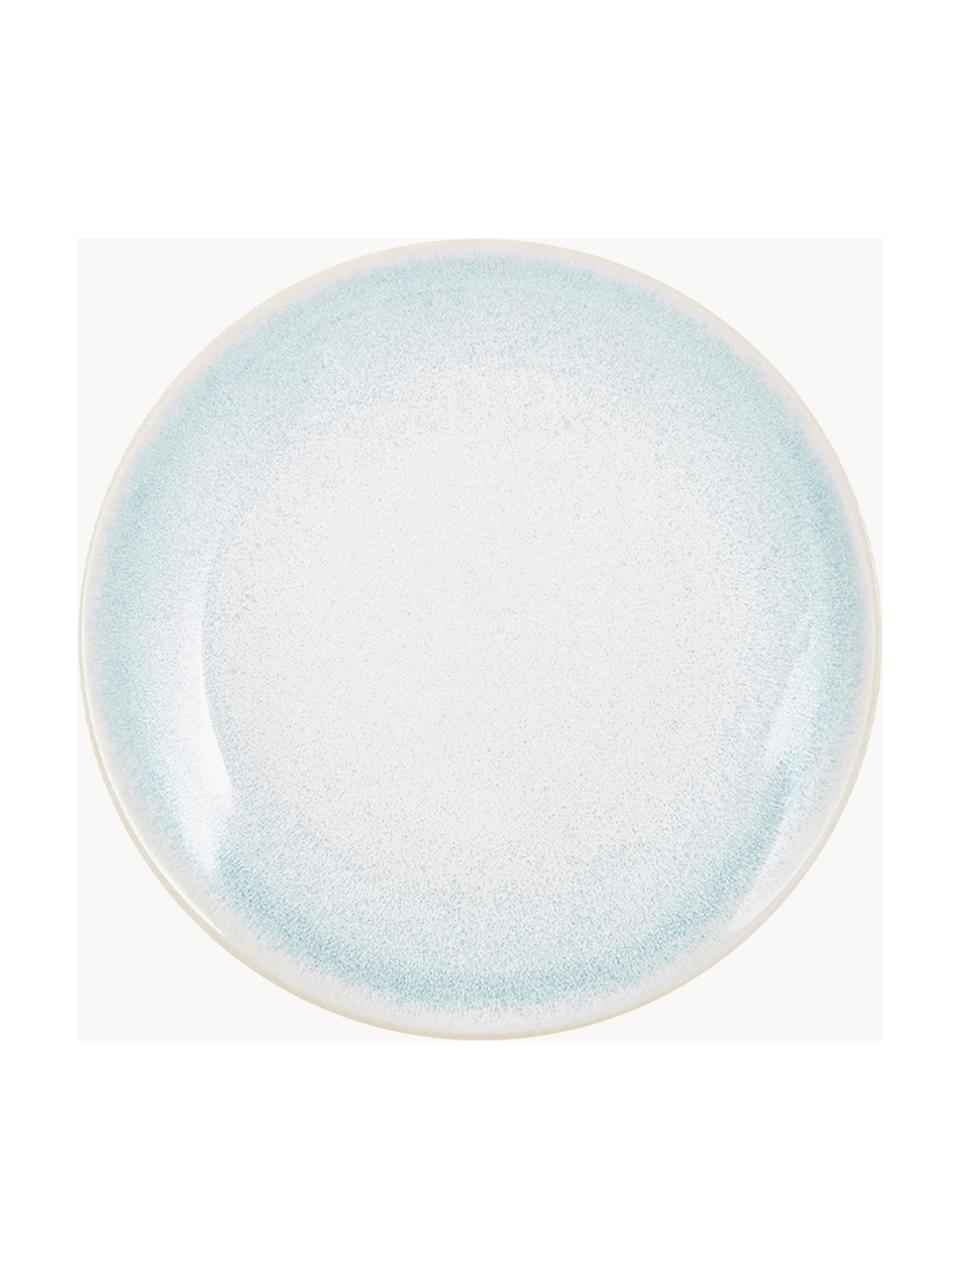 Ručně vyrobený snídaňový talíř s ručně provedenou glazurou Amalia, 2 ks, Keramika, Světle modrá, krémově bílá, Ø 20 cm